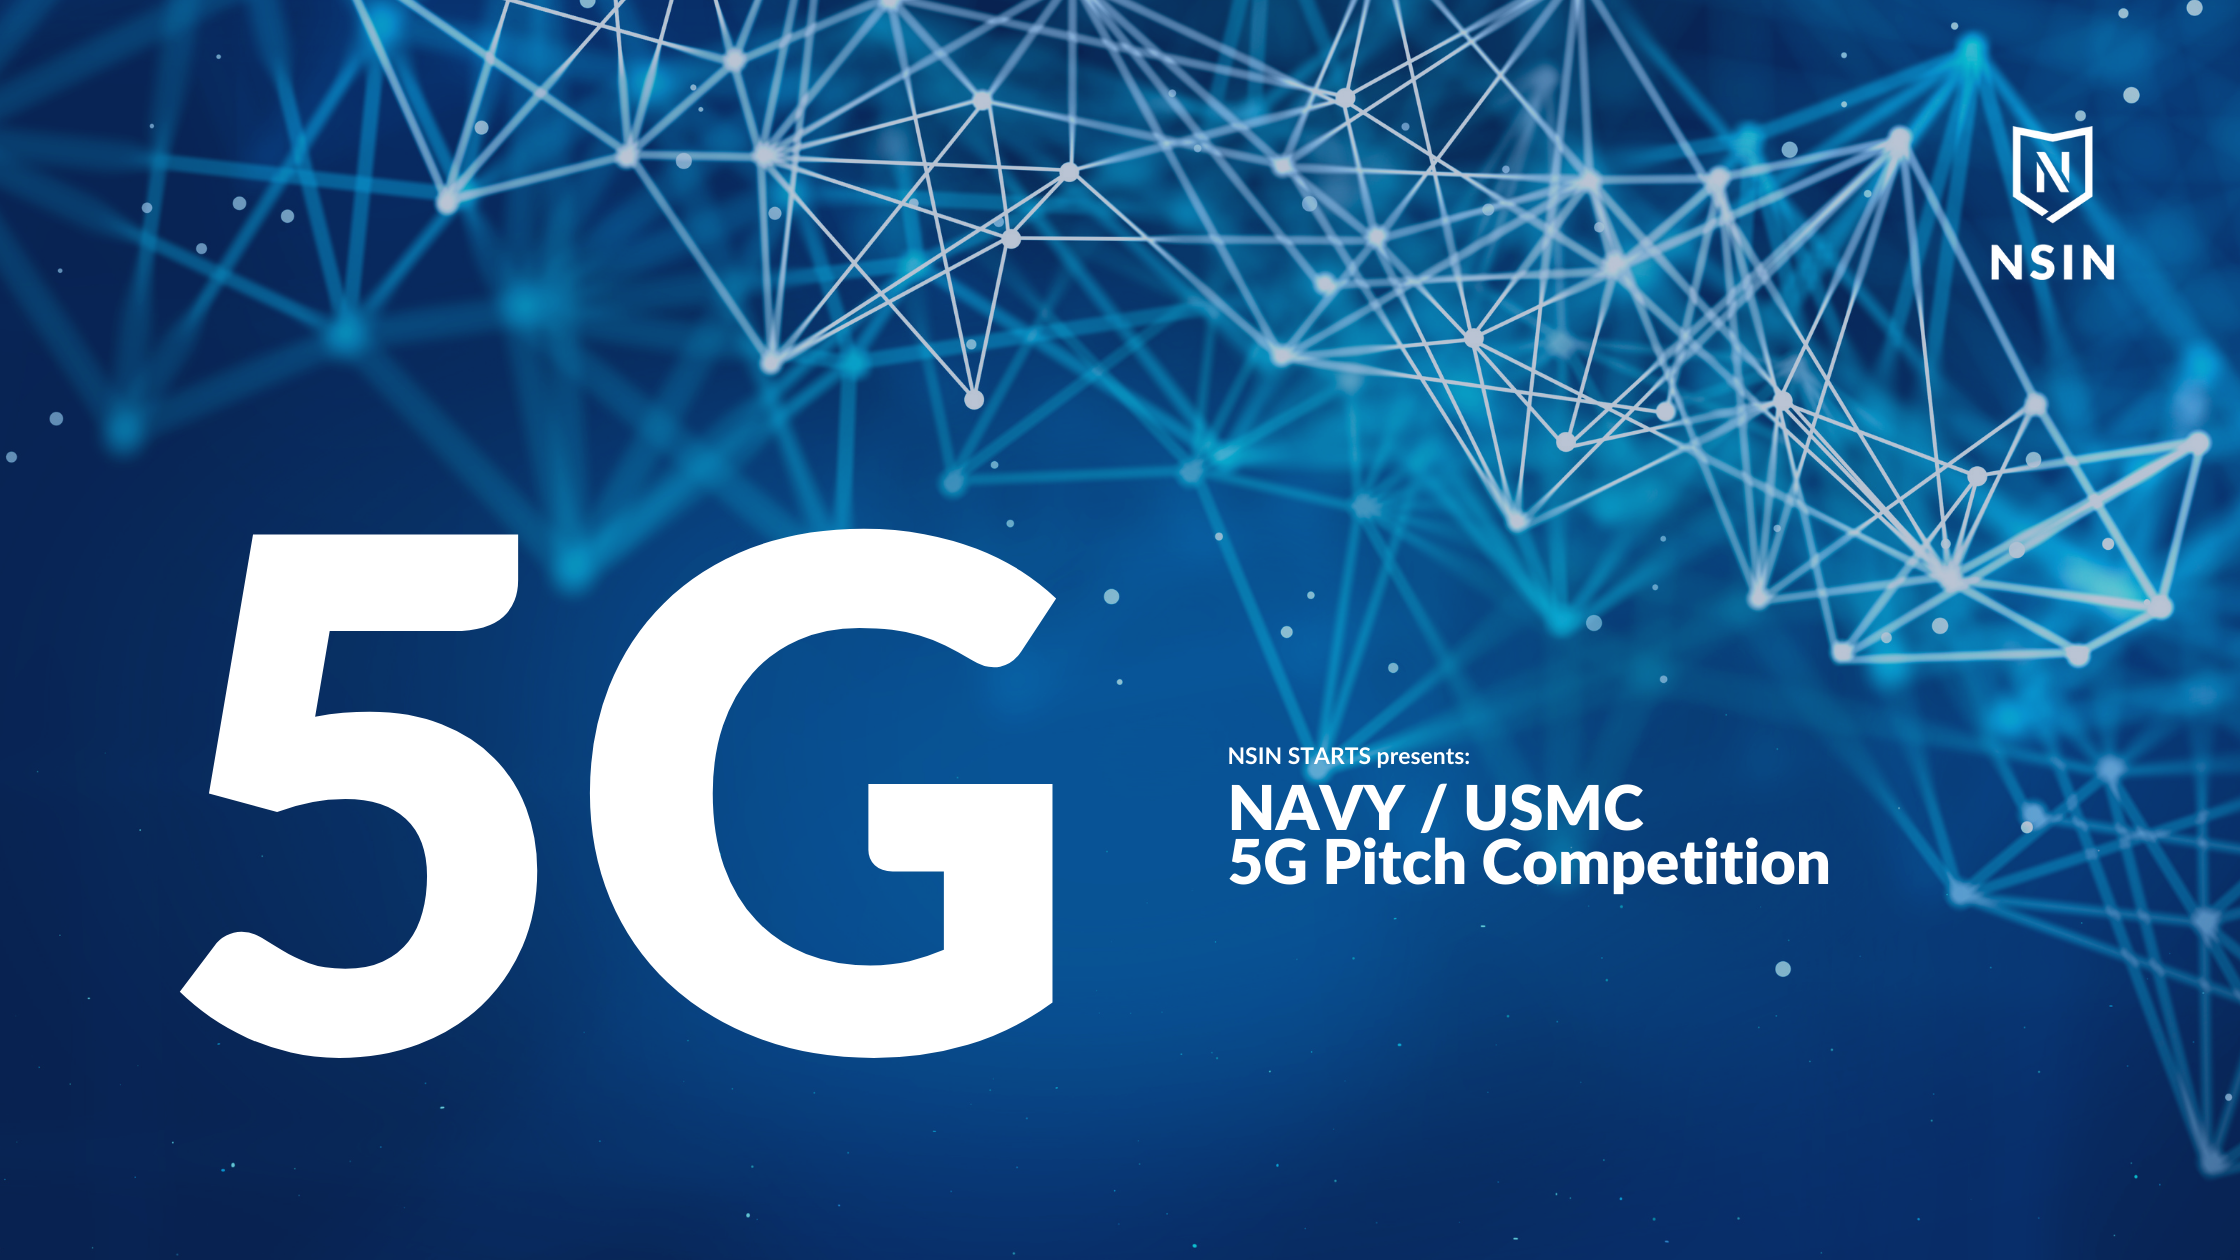 NSIN Starts presents: Navy & USMC 5G